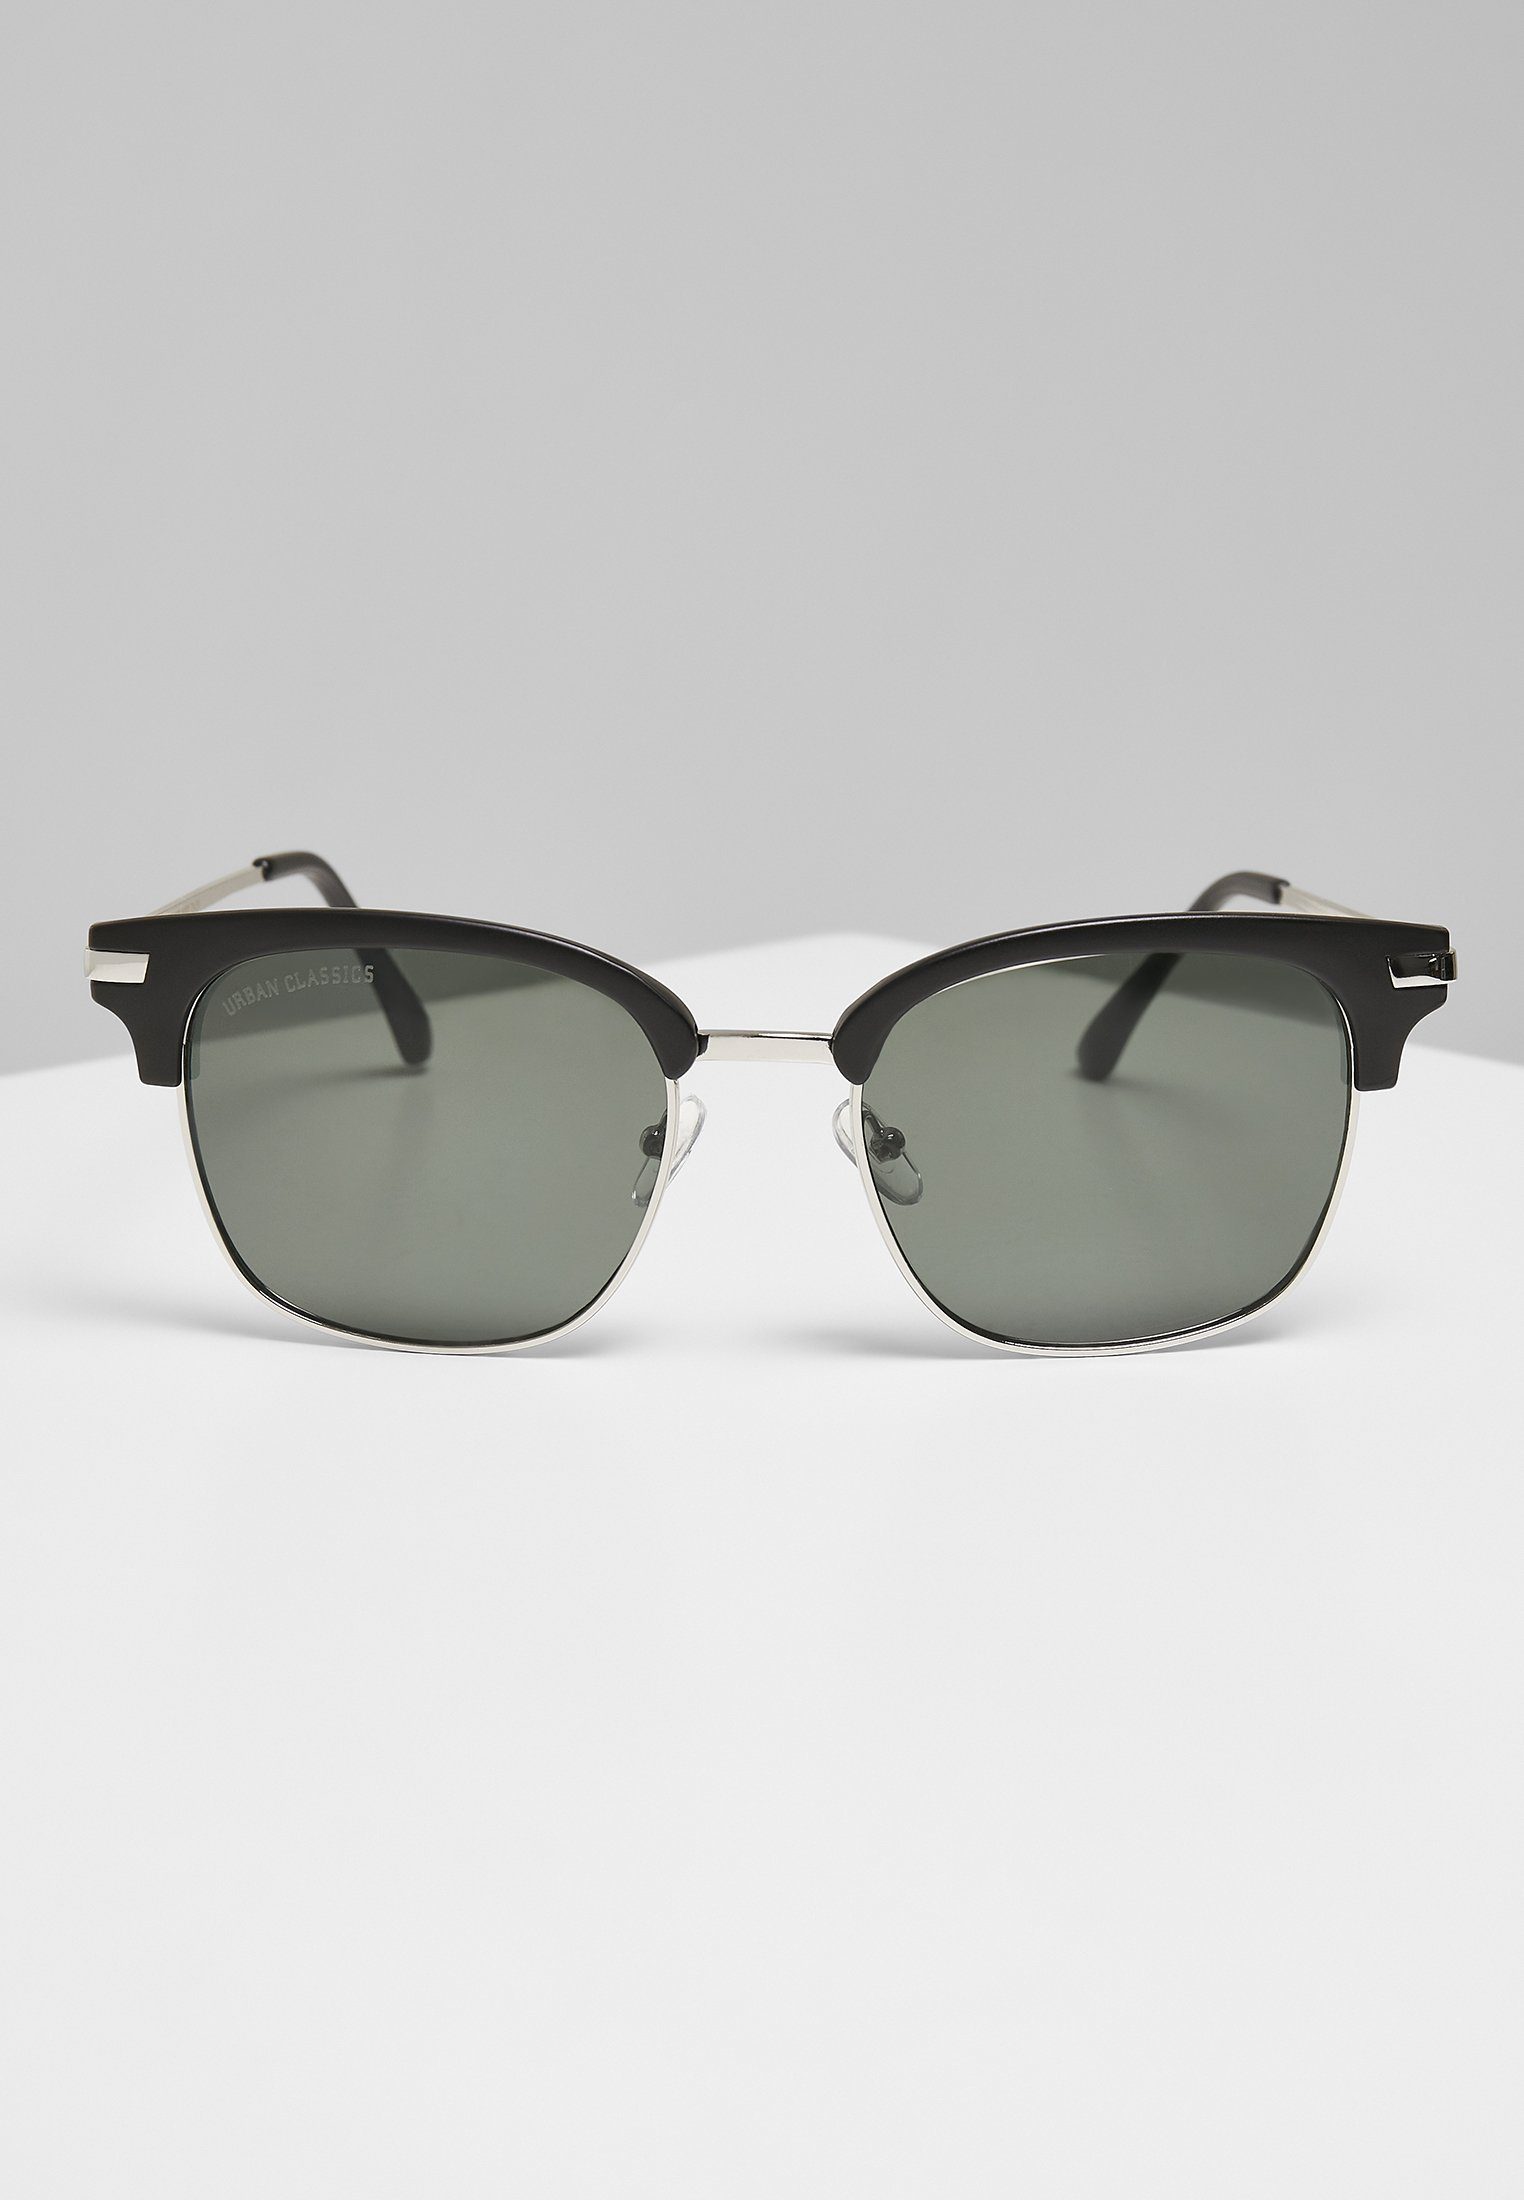 Sunglasses CLASSICS Crete With Unisex URBAN Chain Sonnenbrille